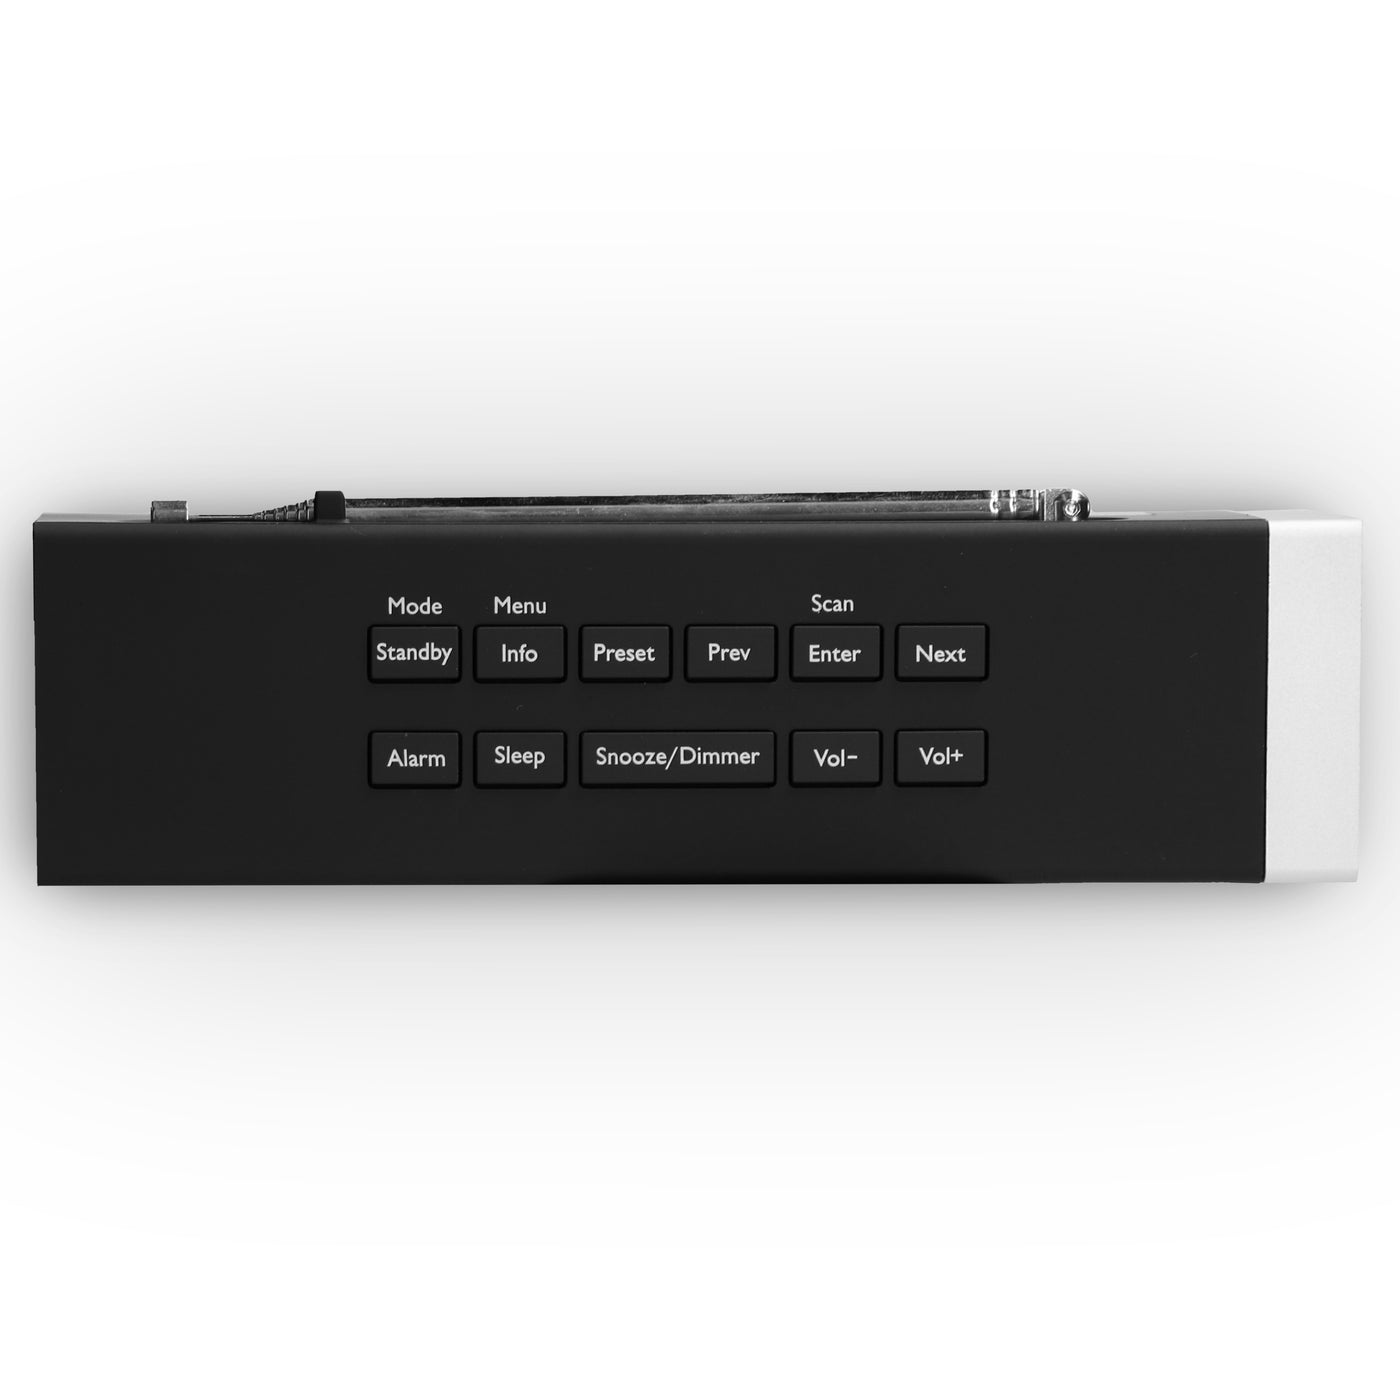 LENCO CR-630BK - Stereo DAB+/FM Wekkerradio met USB aansluiting en AUX-ingang - Zwart